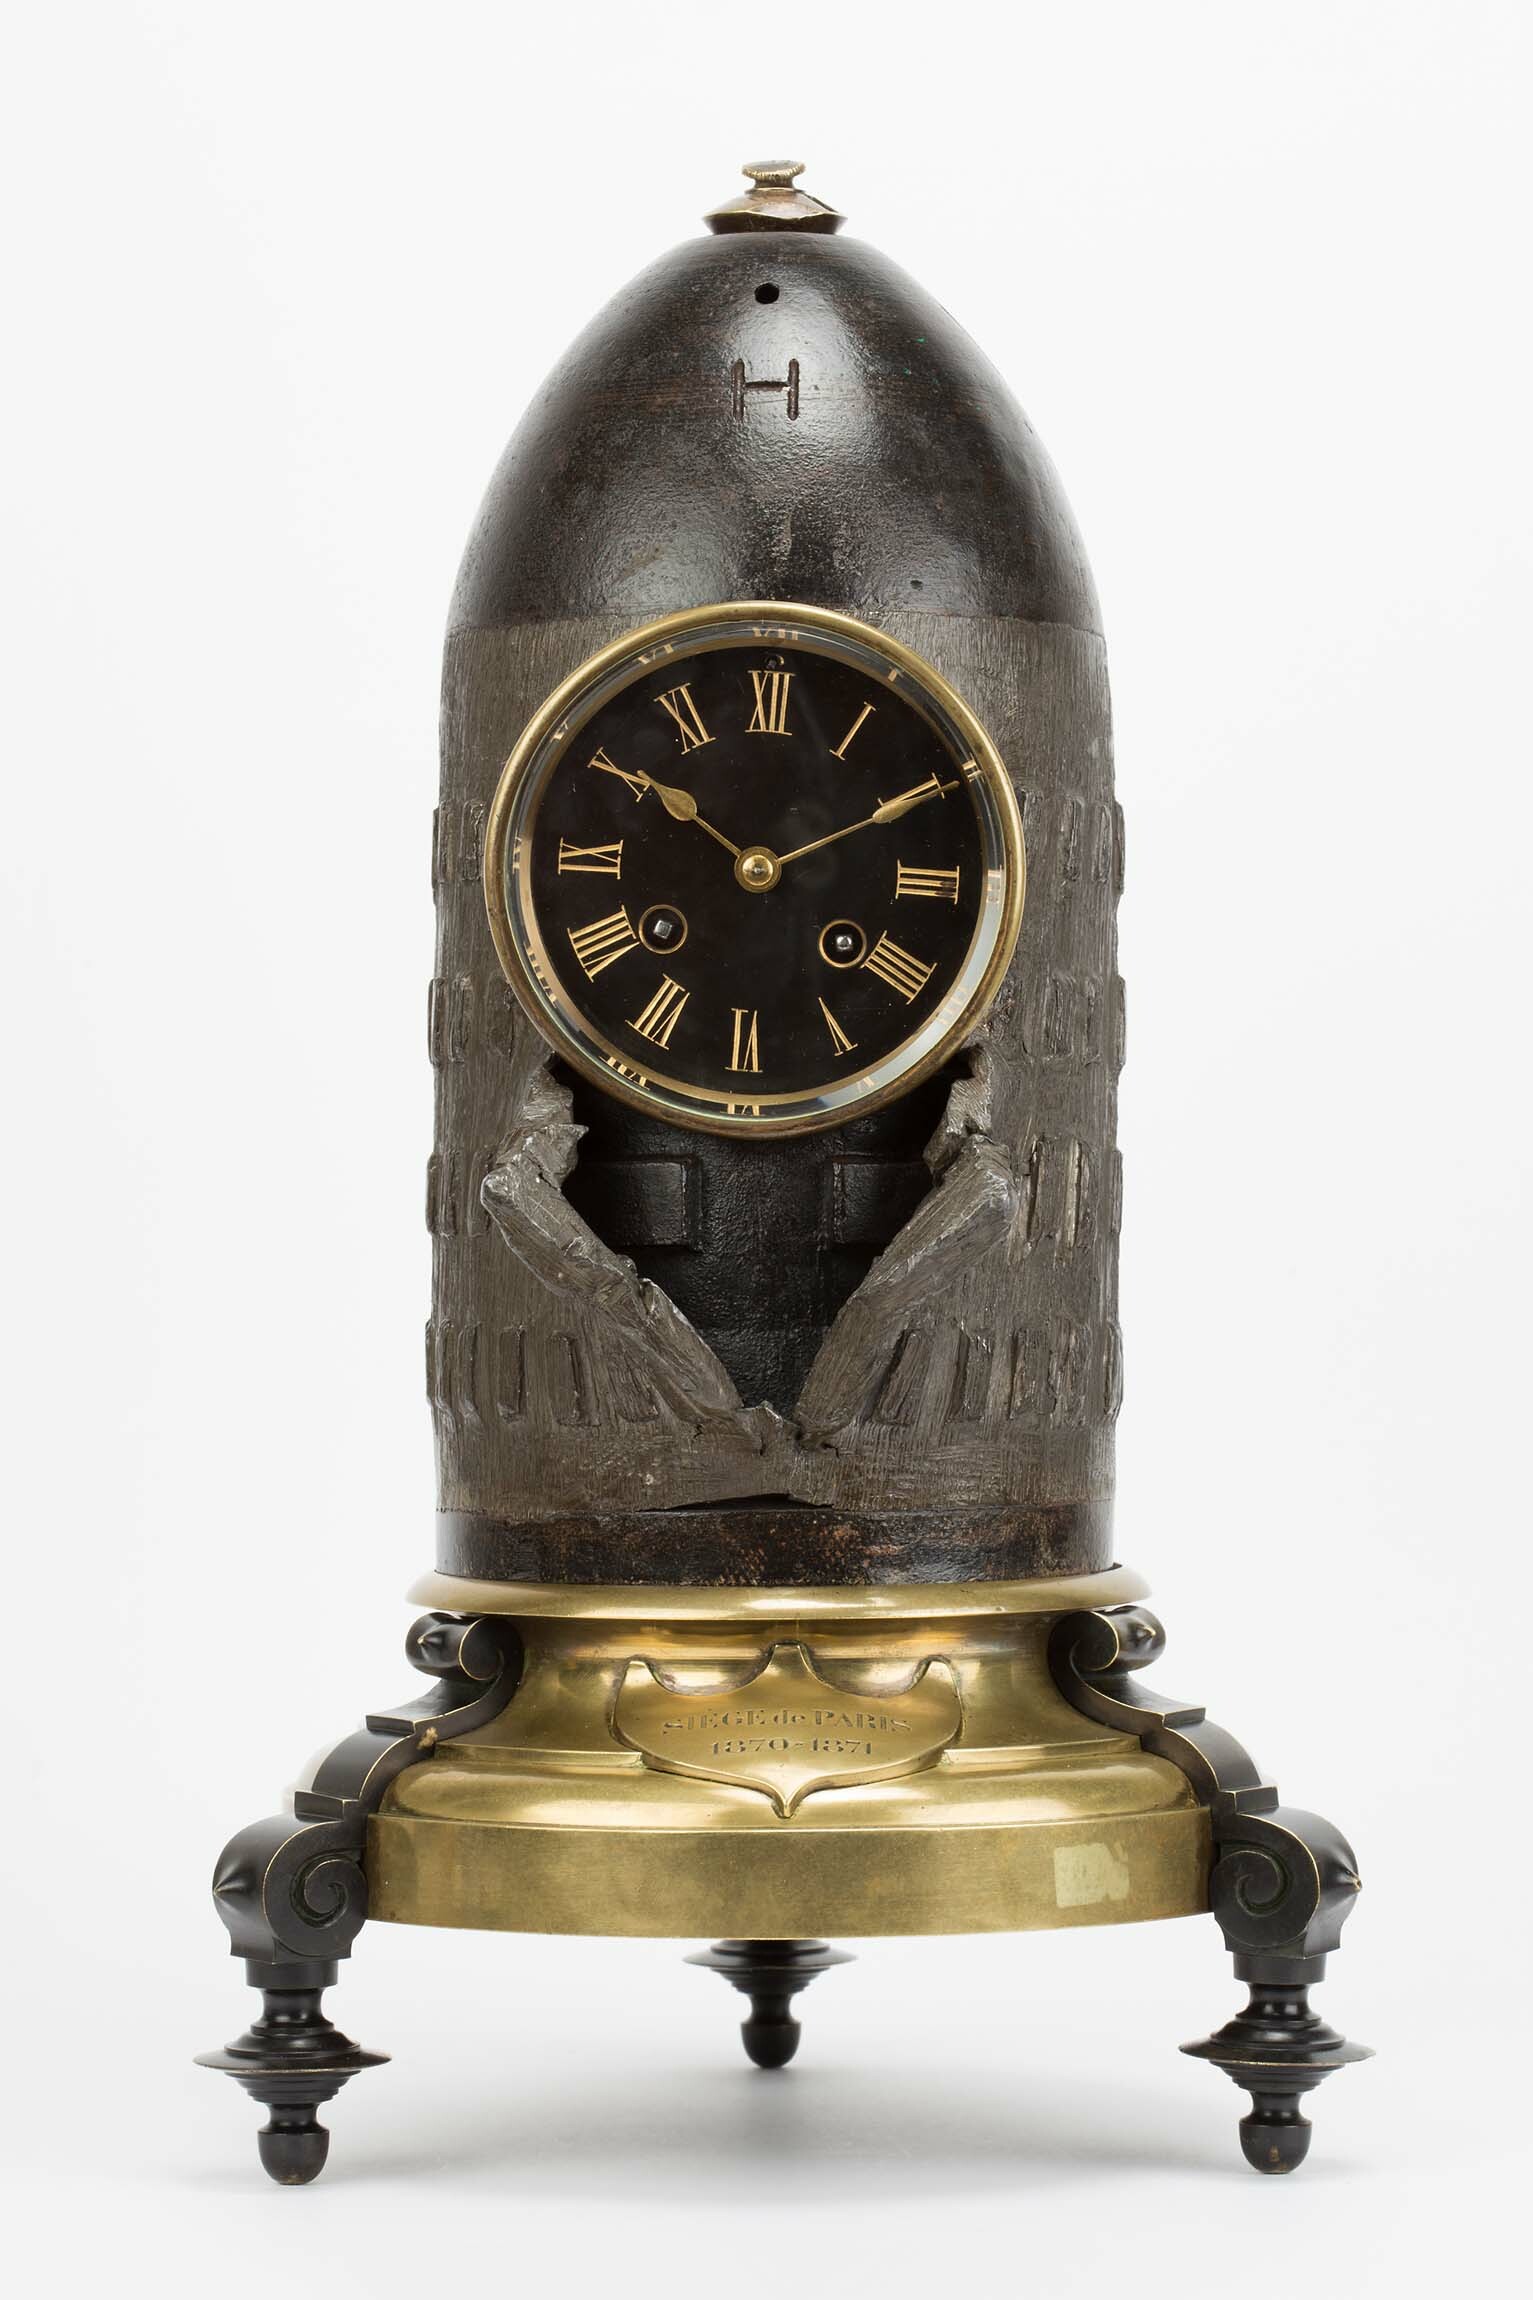 Tischuhr Siège de Paris 1870-1871, um 1872 (Deutsches Uhrenmuseum CC BY-SA)